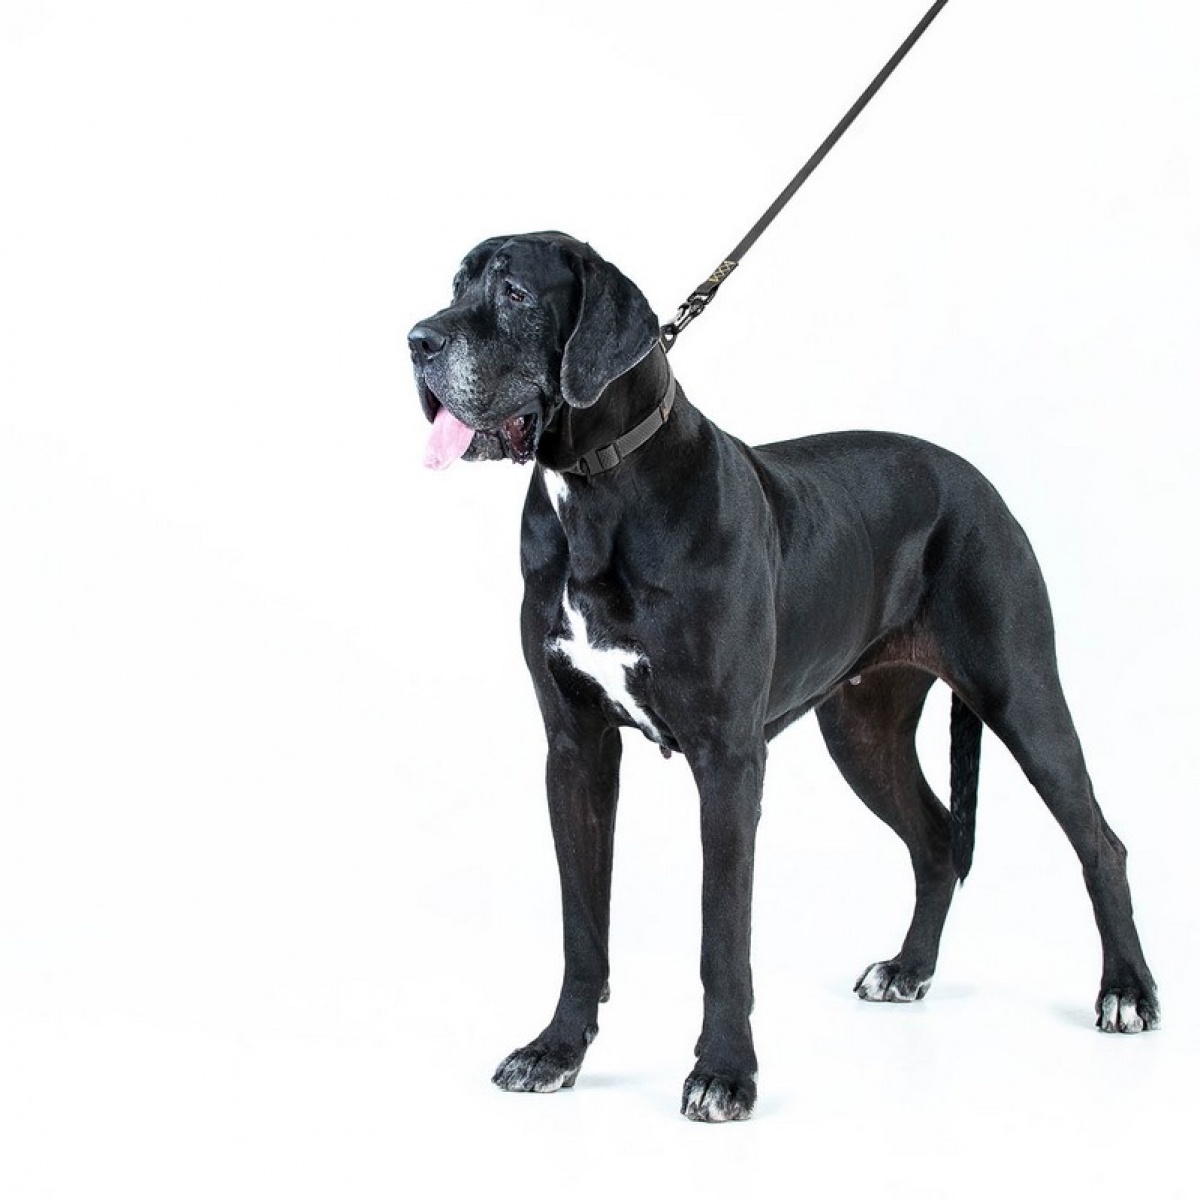 Obroża COLLAR EVOLUTOR dla średnich, dużych oraz olbrzymich ras psów, klamra wykonana z wysokowytrzymałego aluminium lotniczego z platformą dla grawerowania. 25-70 cm, czarna 